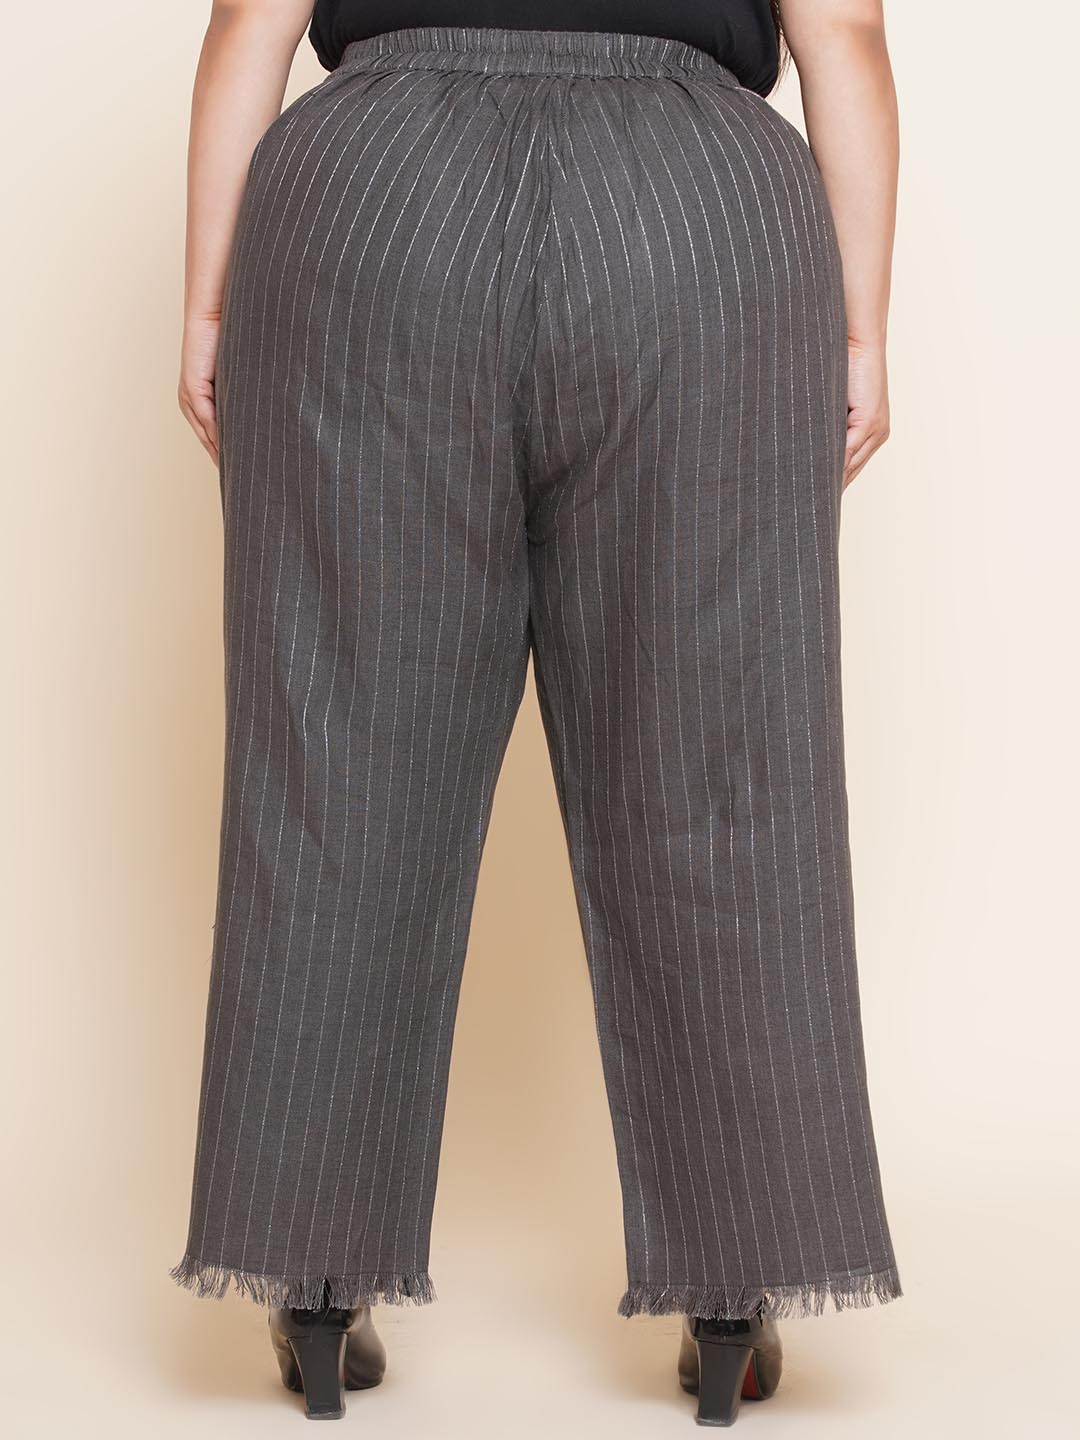 bottomwear_kiaahvi/trousers/KITR5018/kitr5018-5.jpg